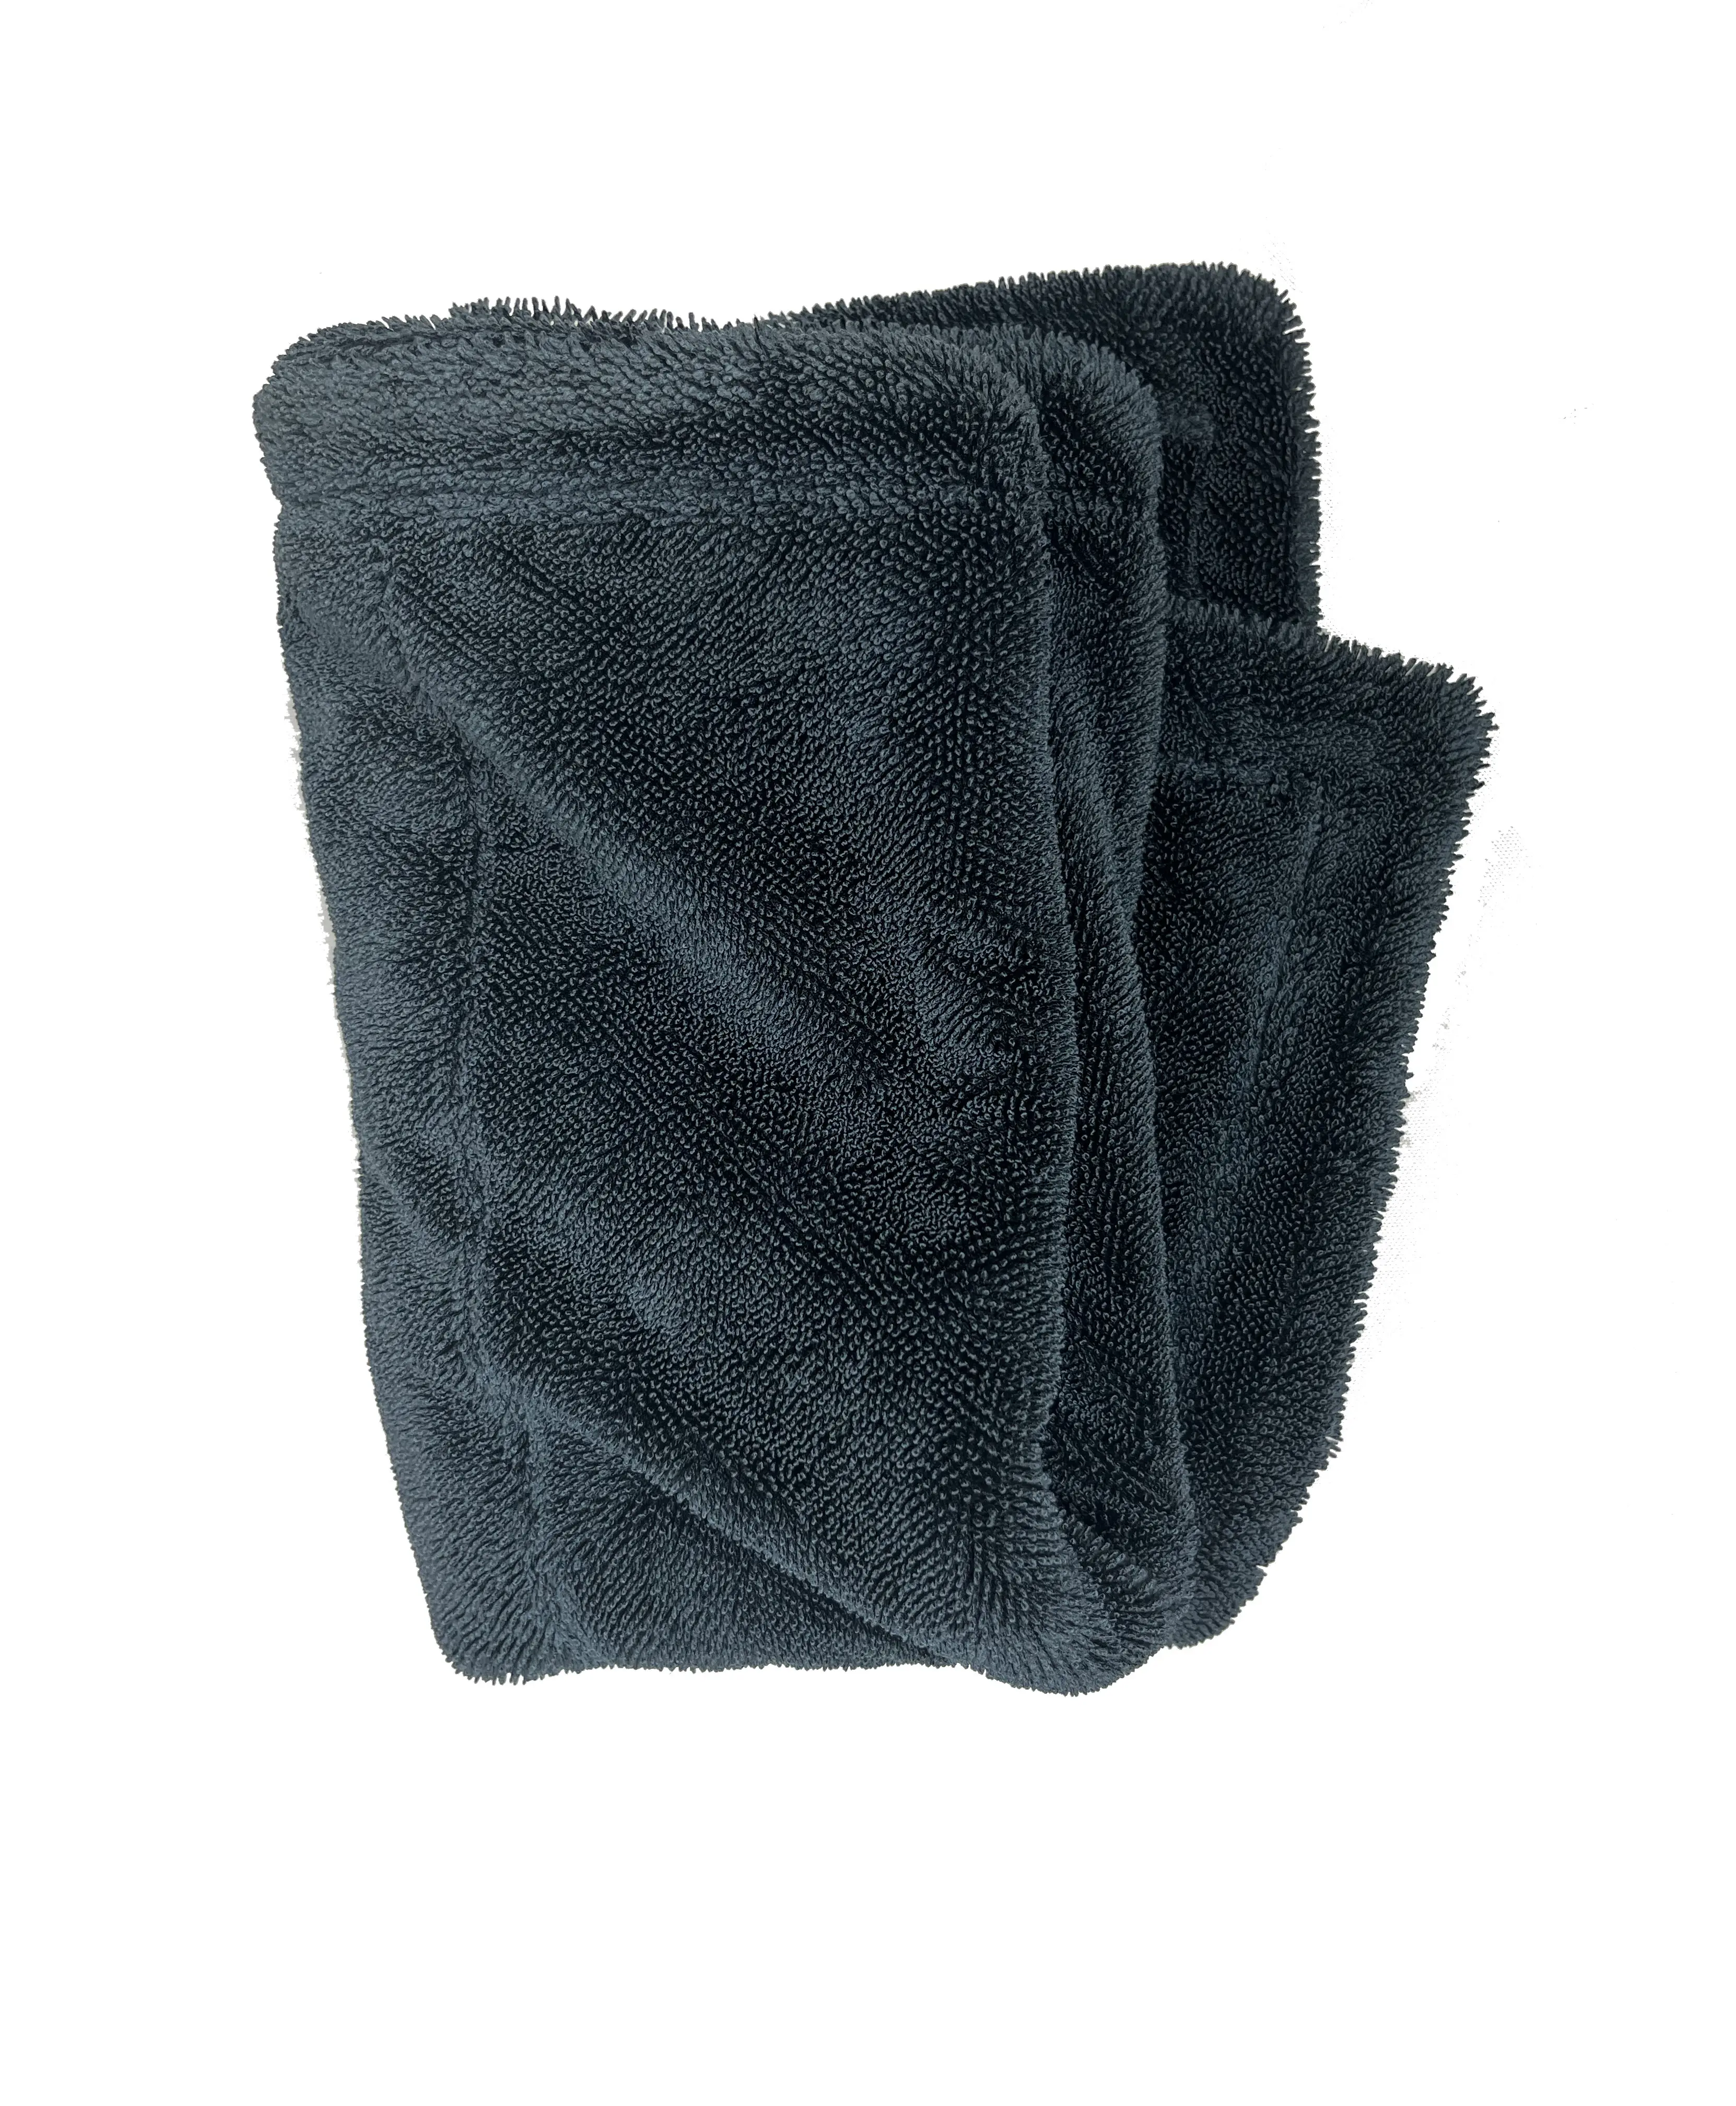 70*90 cm Twist Towel MAX Microfiber Car Care Detailing Wash Magic Super Absorbent Wash Towel